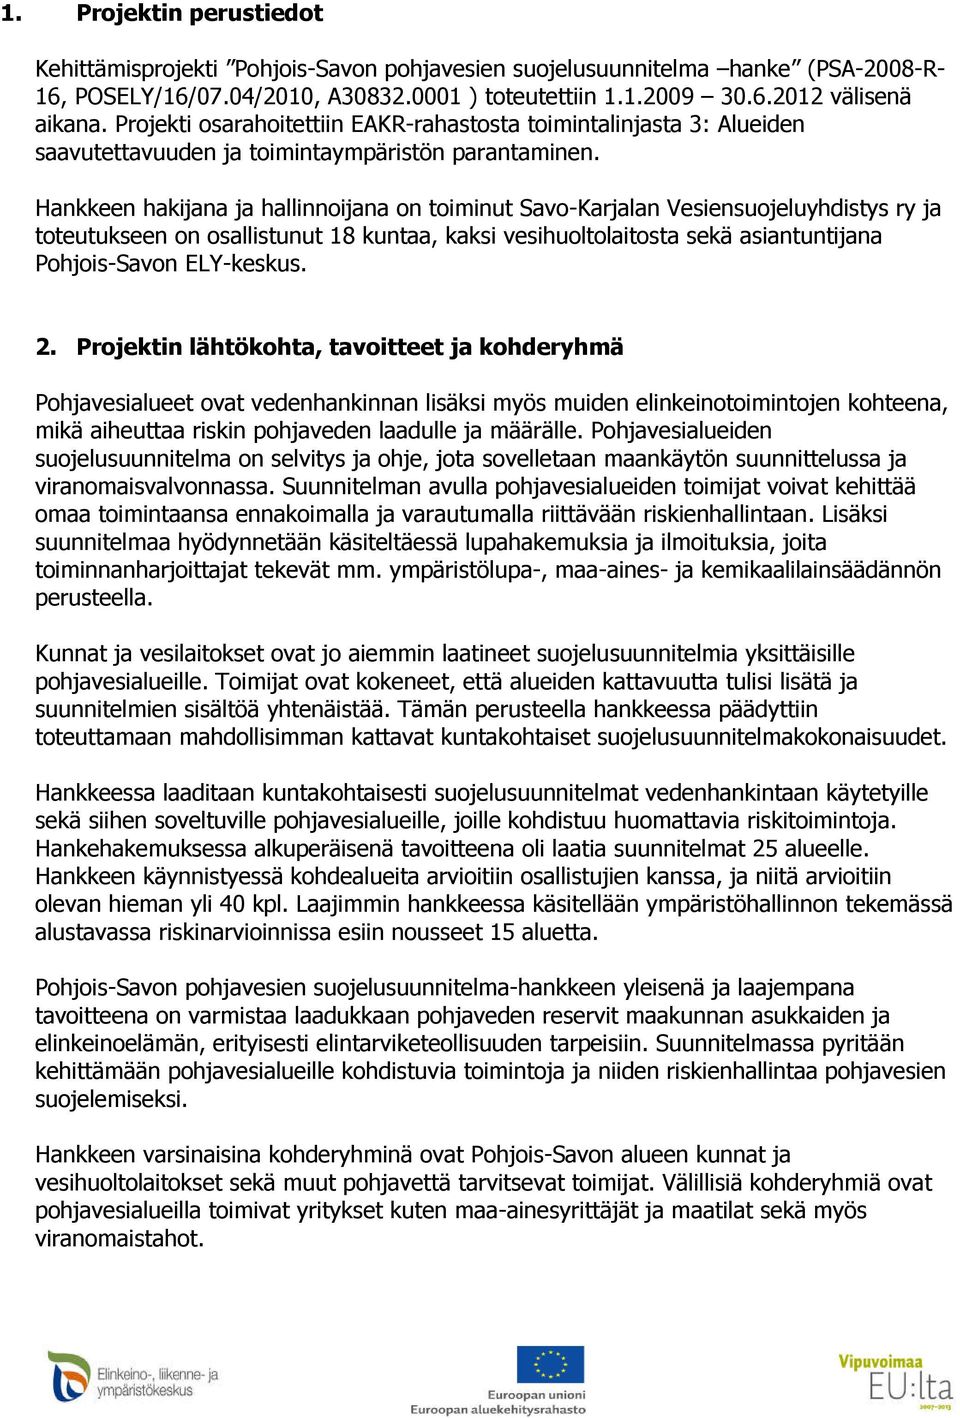 Hankkeen hakijana ja hallinnoijana on toiminut Savo-Karjalan Vesiensuojeluyhdistys ry ja toteutukseen on osallistunut 18 kuntaa, kaksi vesihuoltolaitosta sekä asiantuntijana Pohjois-Savon ELY-keskus.